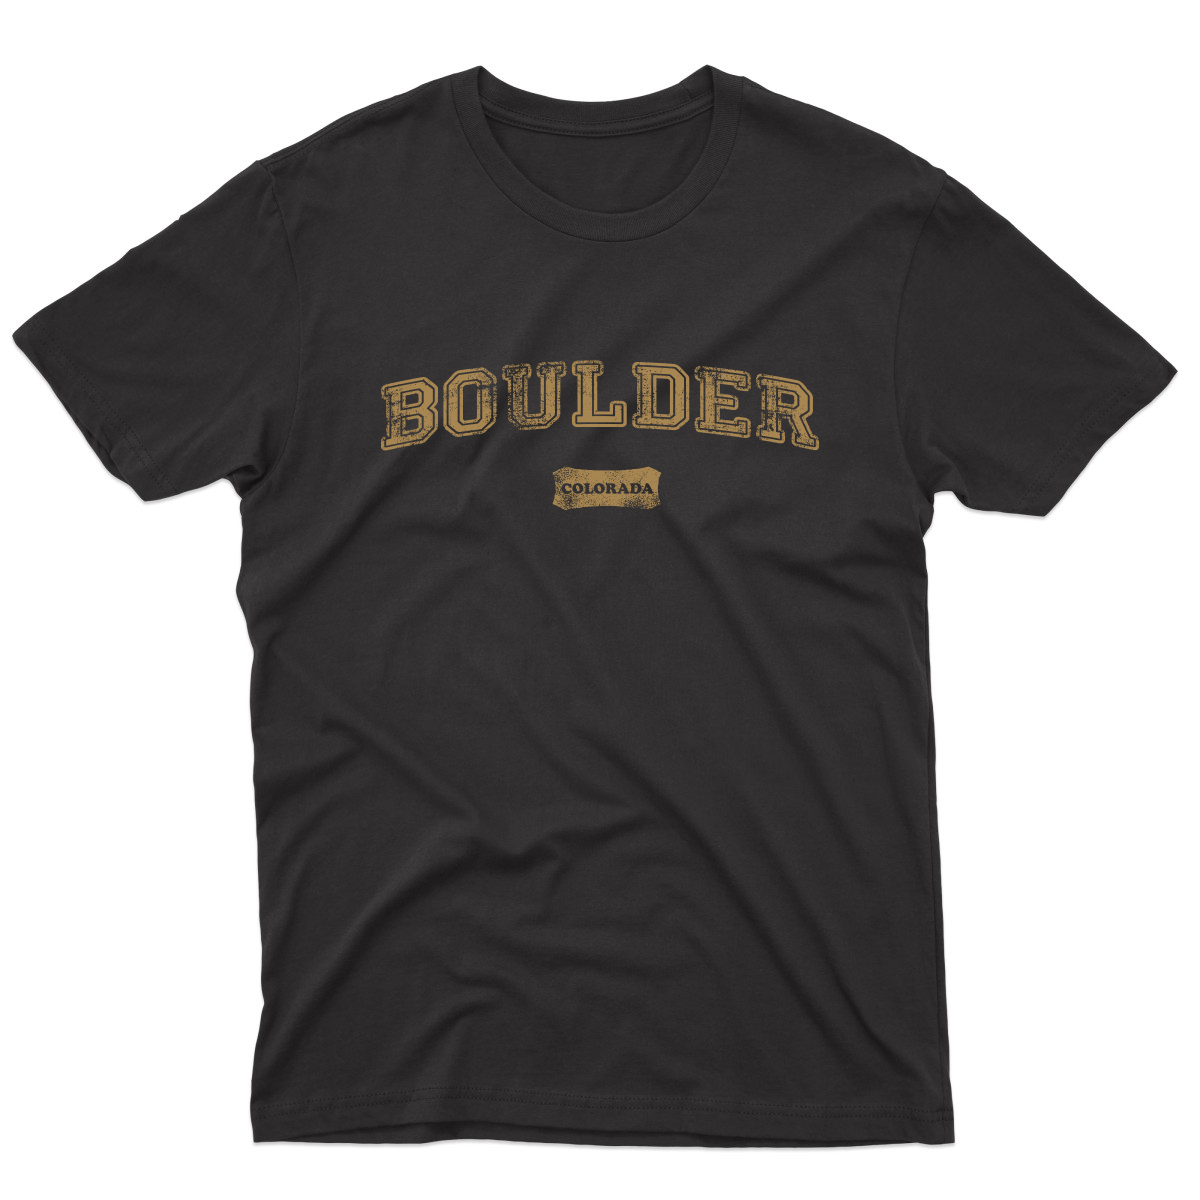 Boulder Colorado Represent Men's T-shirt